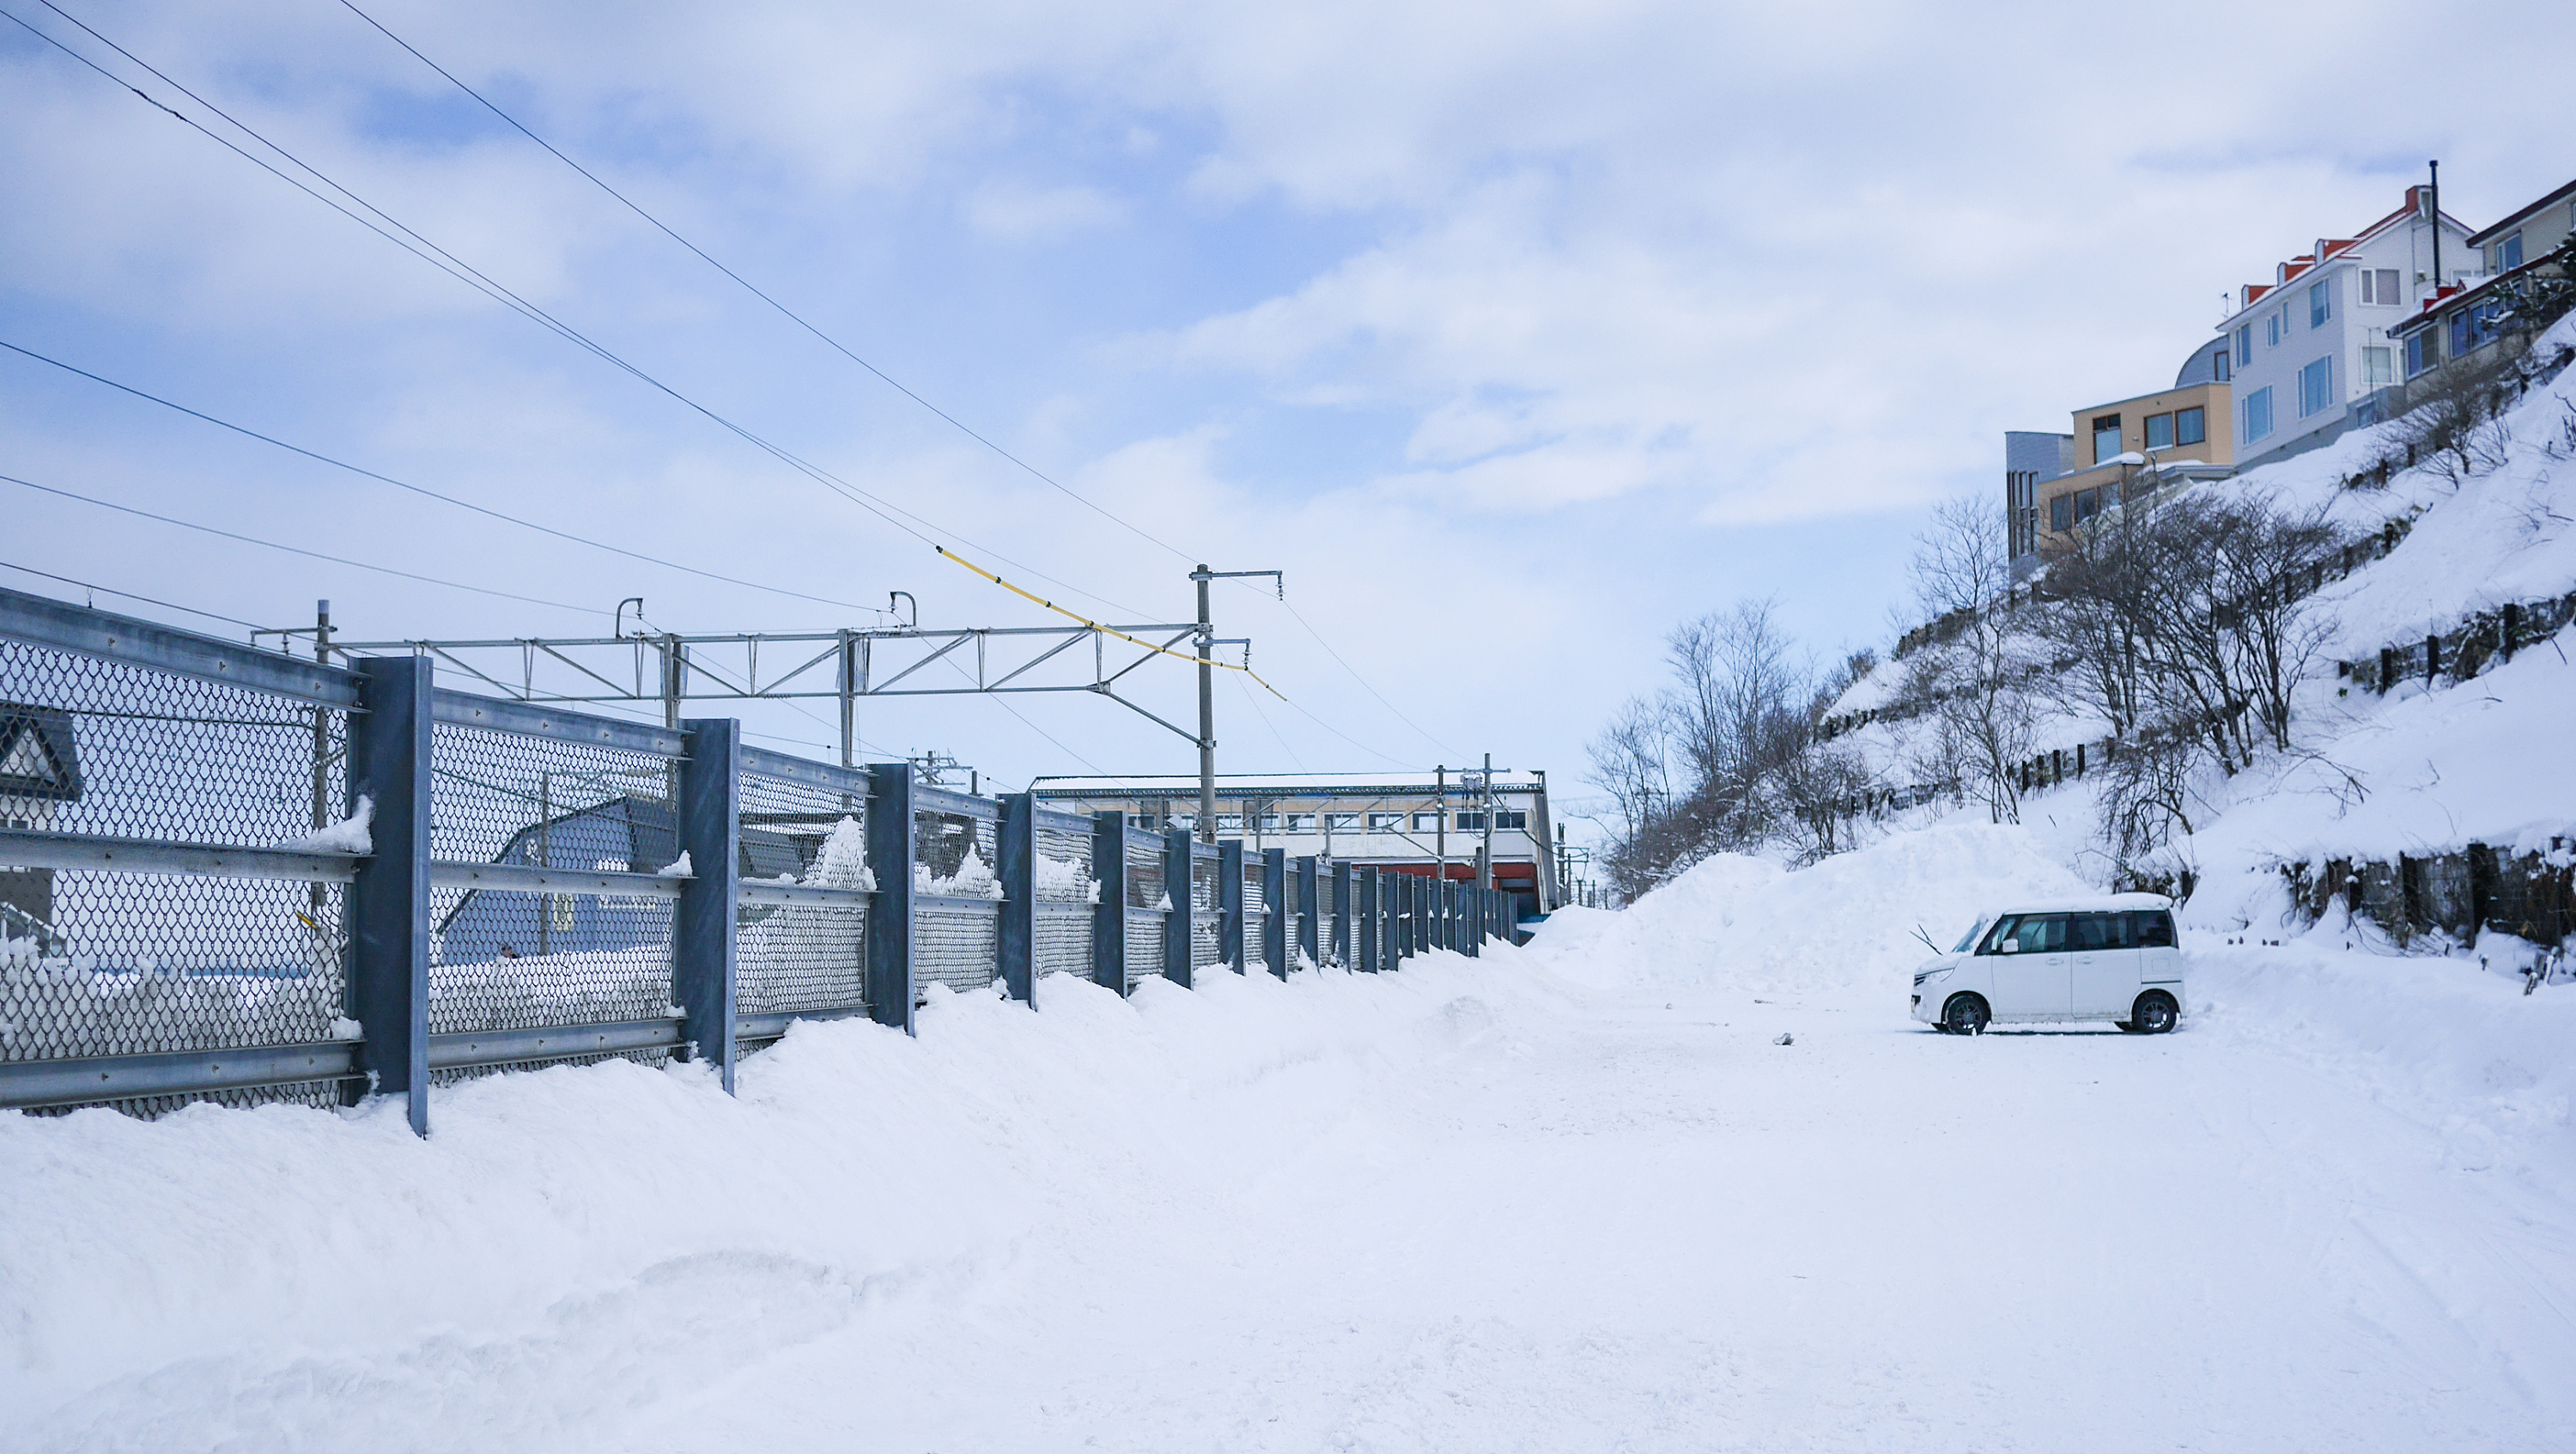 日本北海道雪景壁纸图片大全 Uc今日头条新闻网